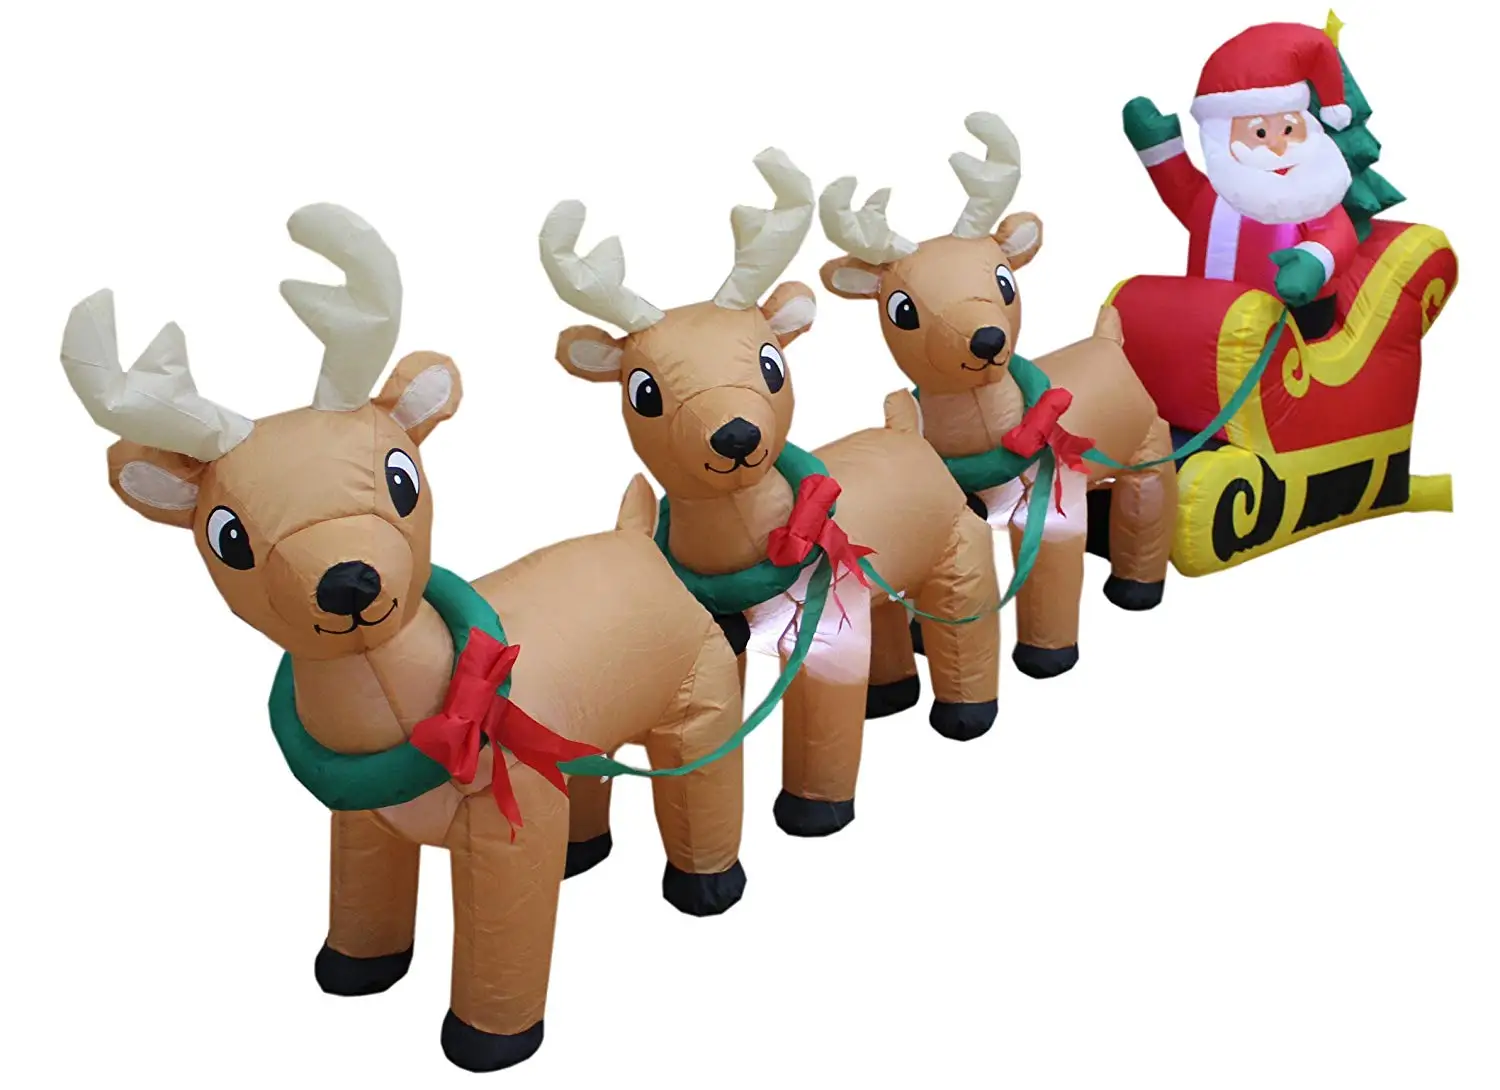 クリスマスの装飾のための3つのトナカイとそりのインフレータブルサンタ Buy インフレータブルサンタ クリスマス装飾 トナカイインフレータブル Product On Alibaba Com